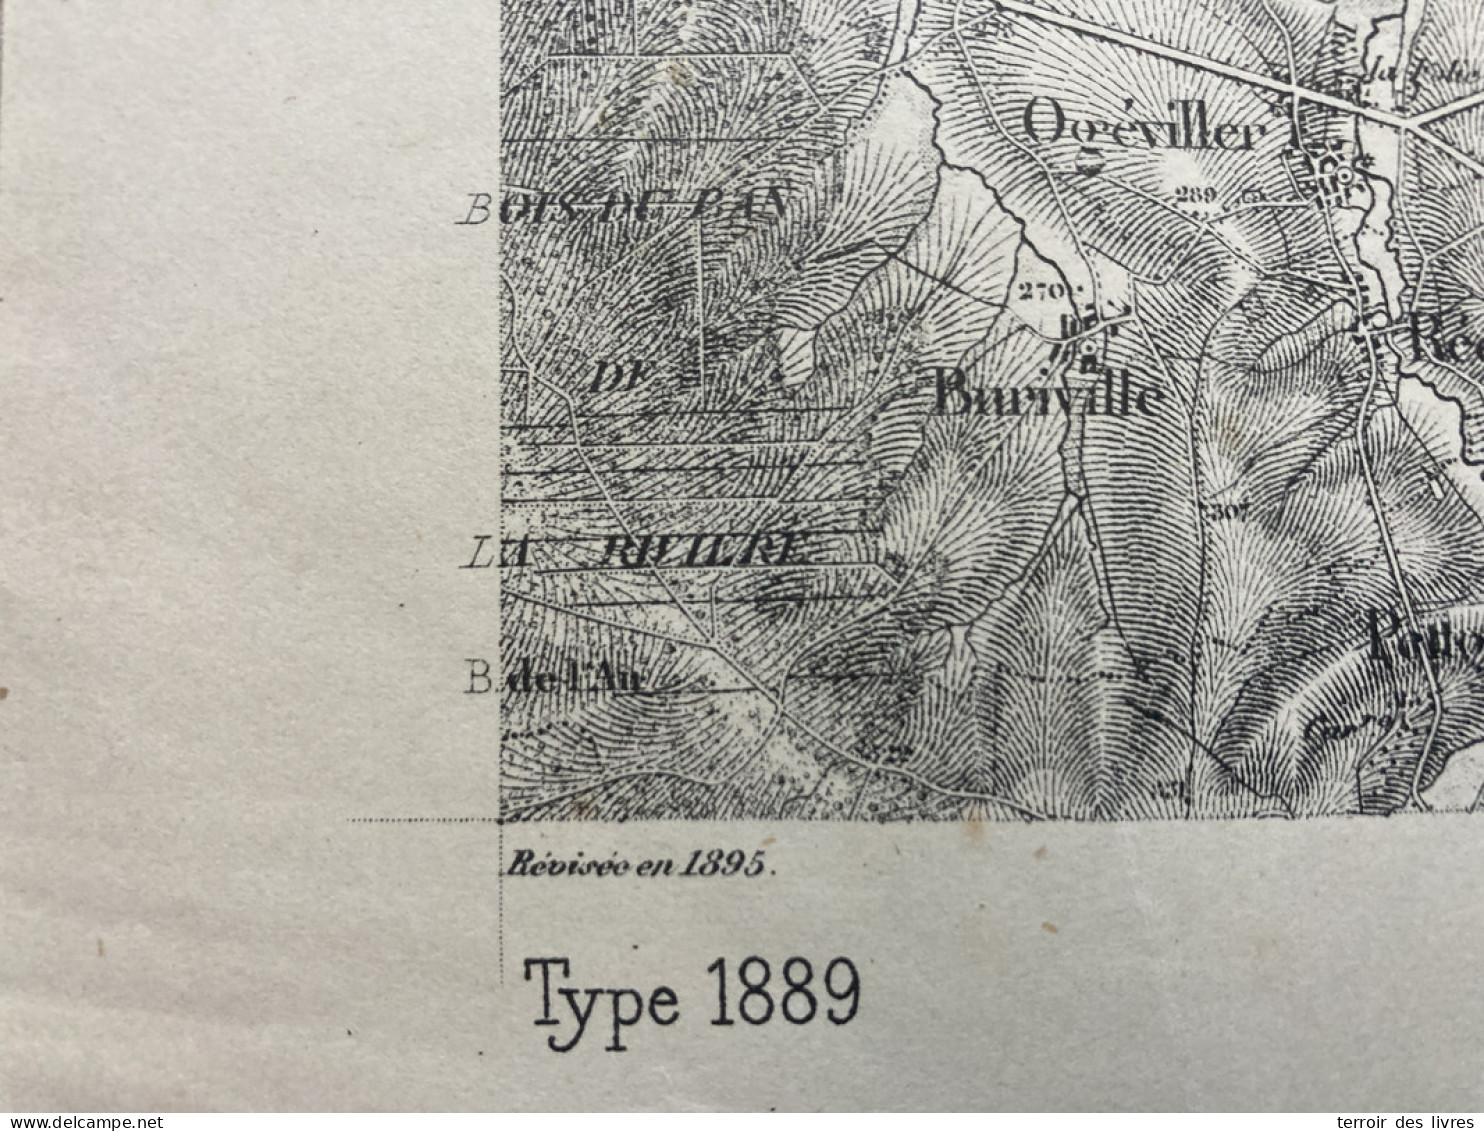 Carte état Major LUNÉVILLE 1895 33x50cm TANCONVILLE CIREY-SUR-VEZOUZE HATTIGNY BERTRAMBOIS RICHEVAL FREMONVILLE IBIGNY G - Cartes Géographiques